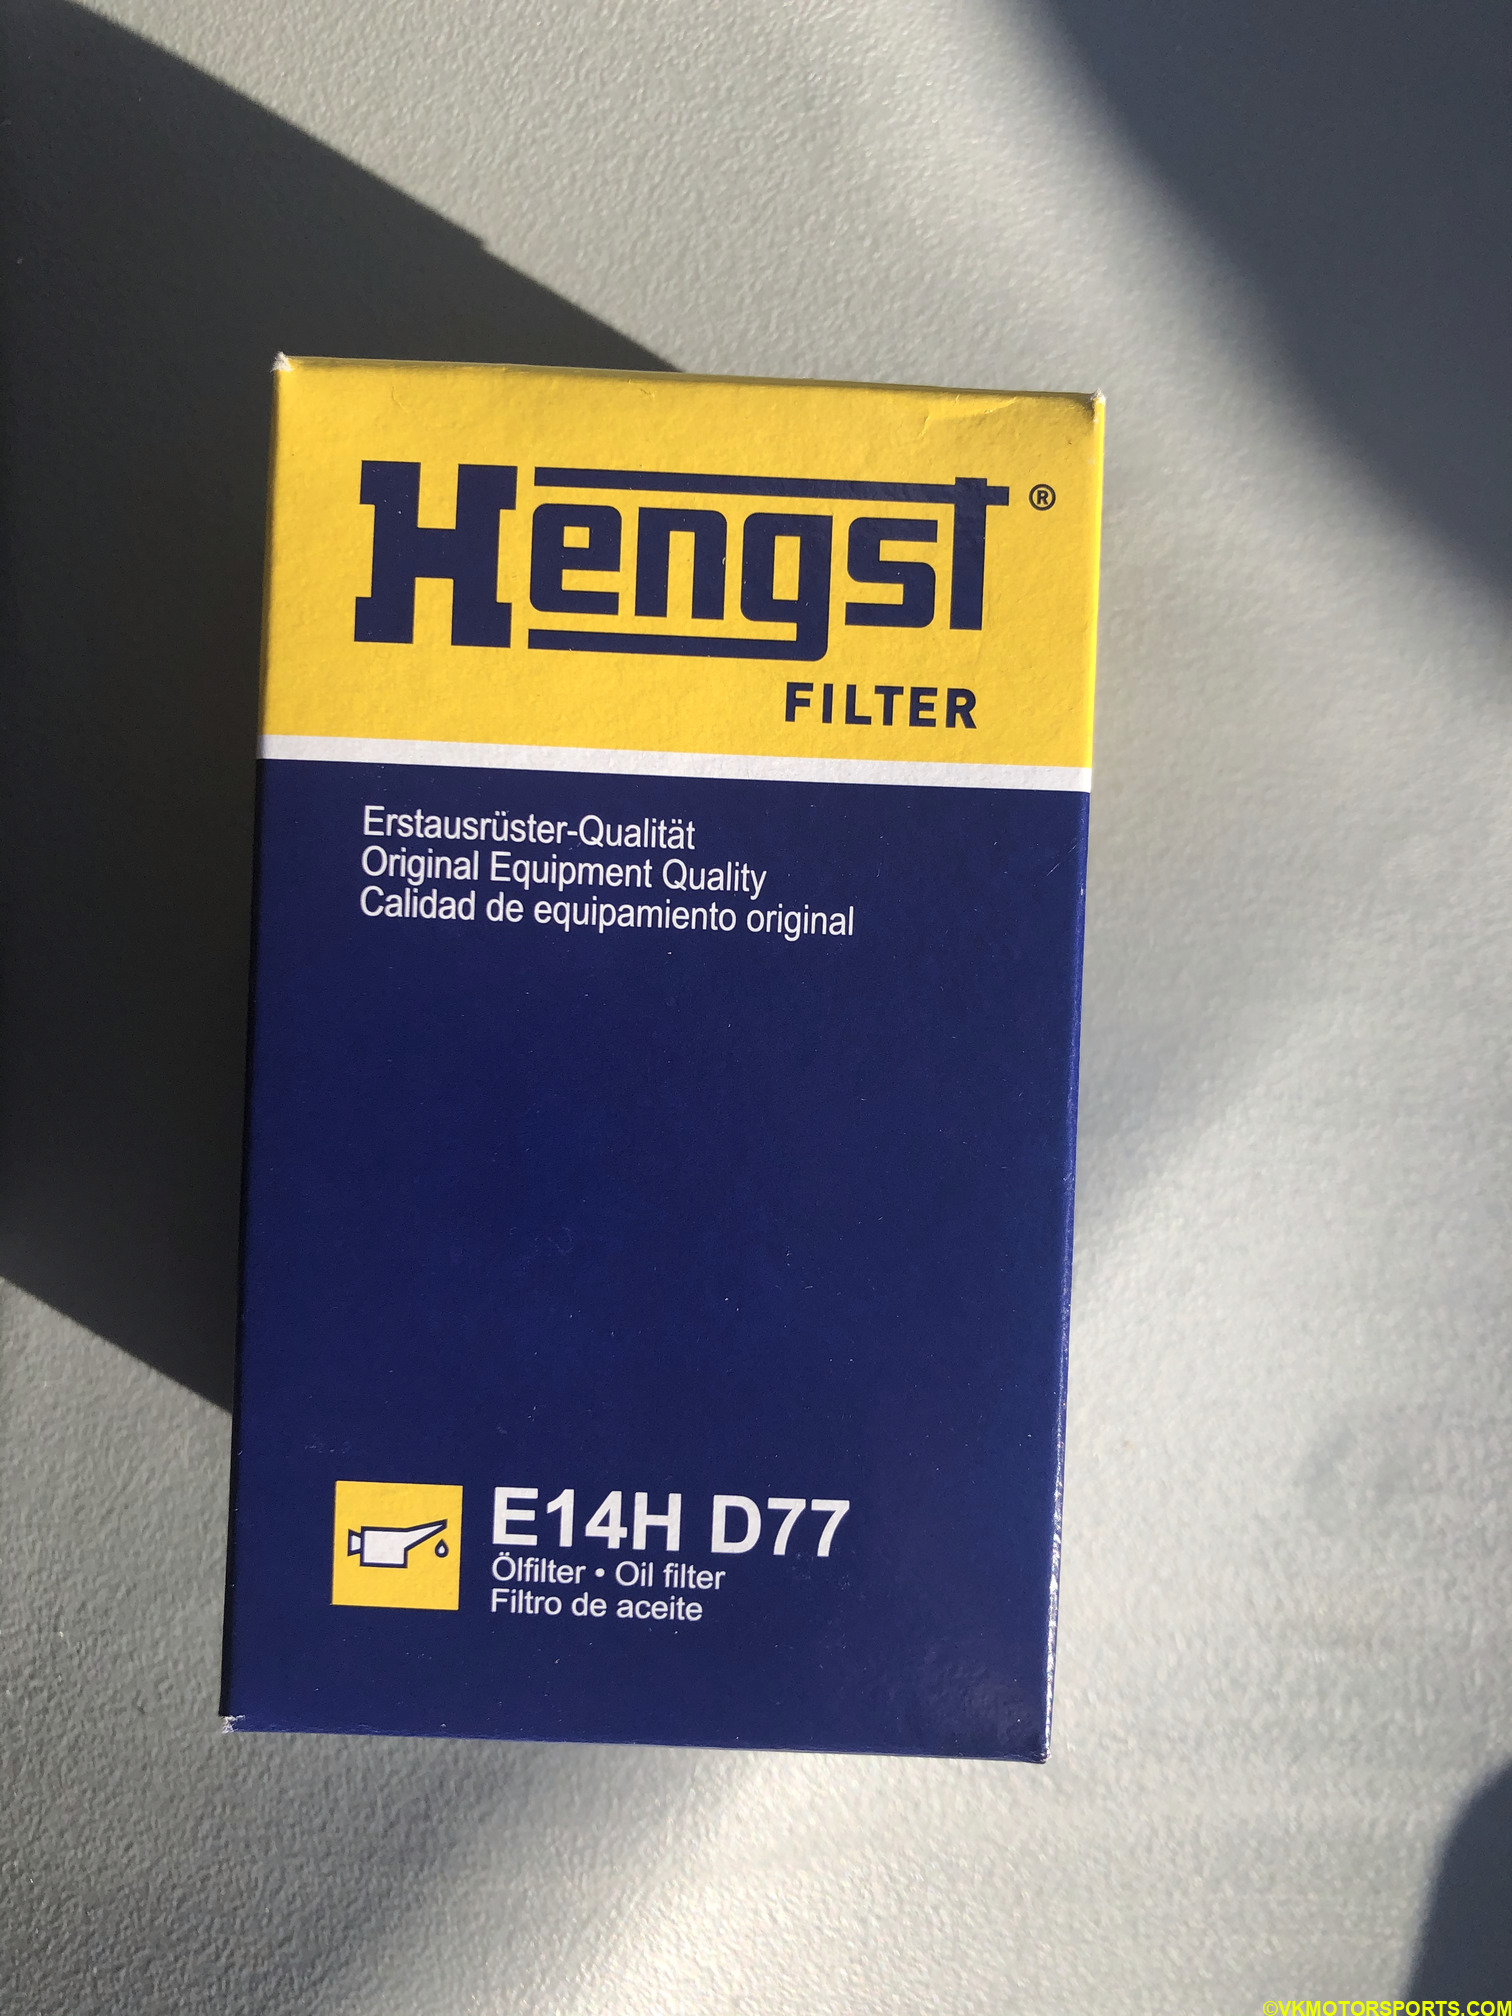 Figure 12. OEM Hengst Oil Filter box